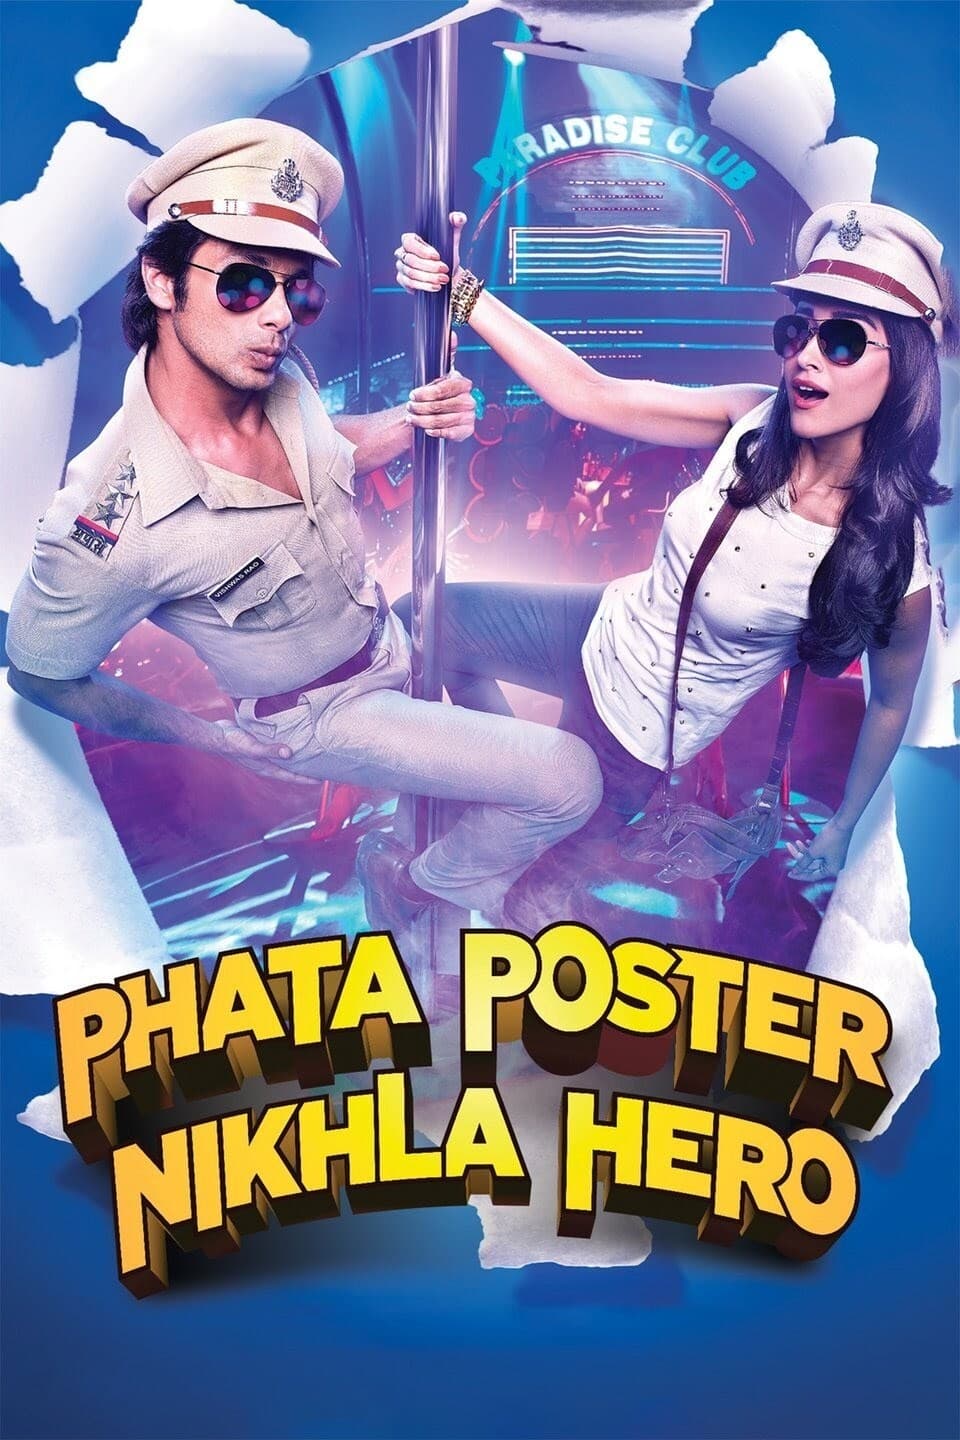 Phata Poster Nikhla Hero